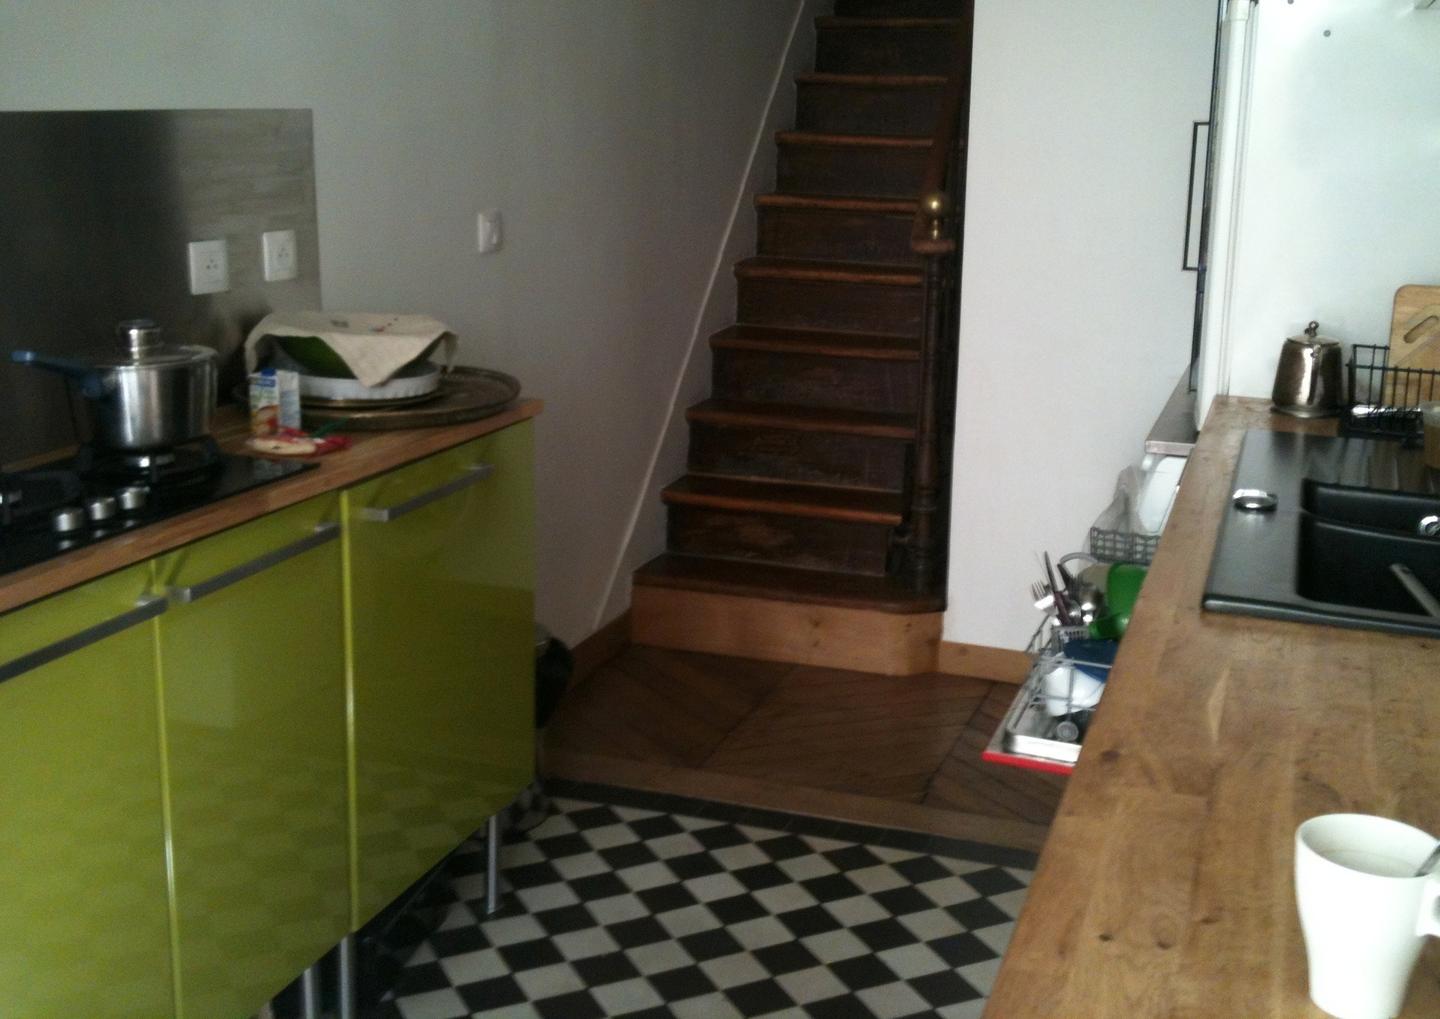 Hôte GreenGo: Eco logement Parisien sur 2 niveaux (RDC et 1er étage). - Image 5